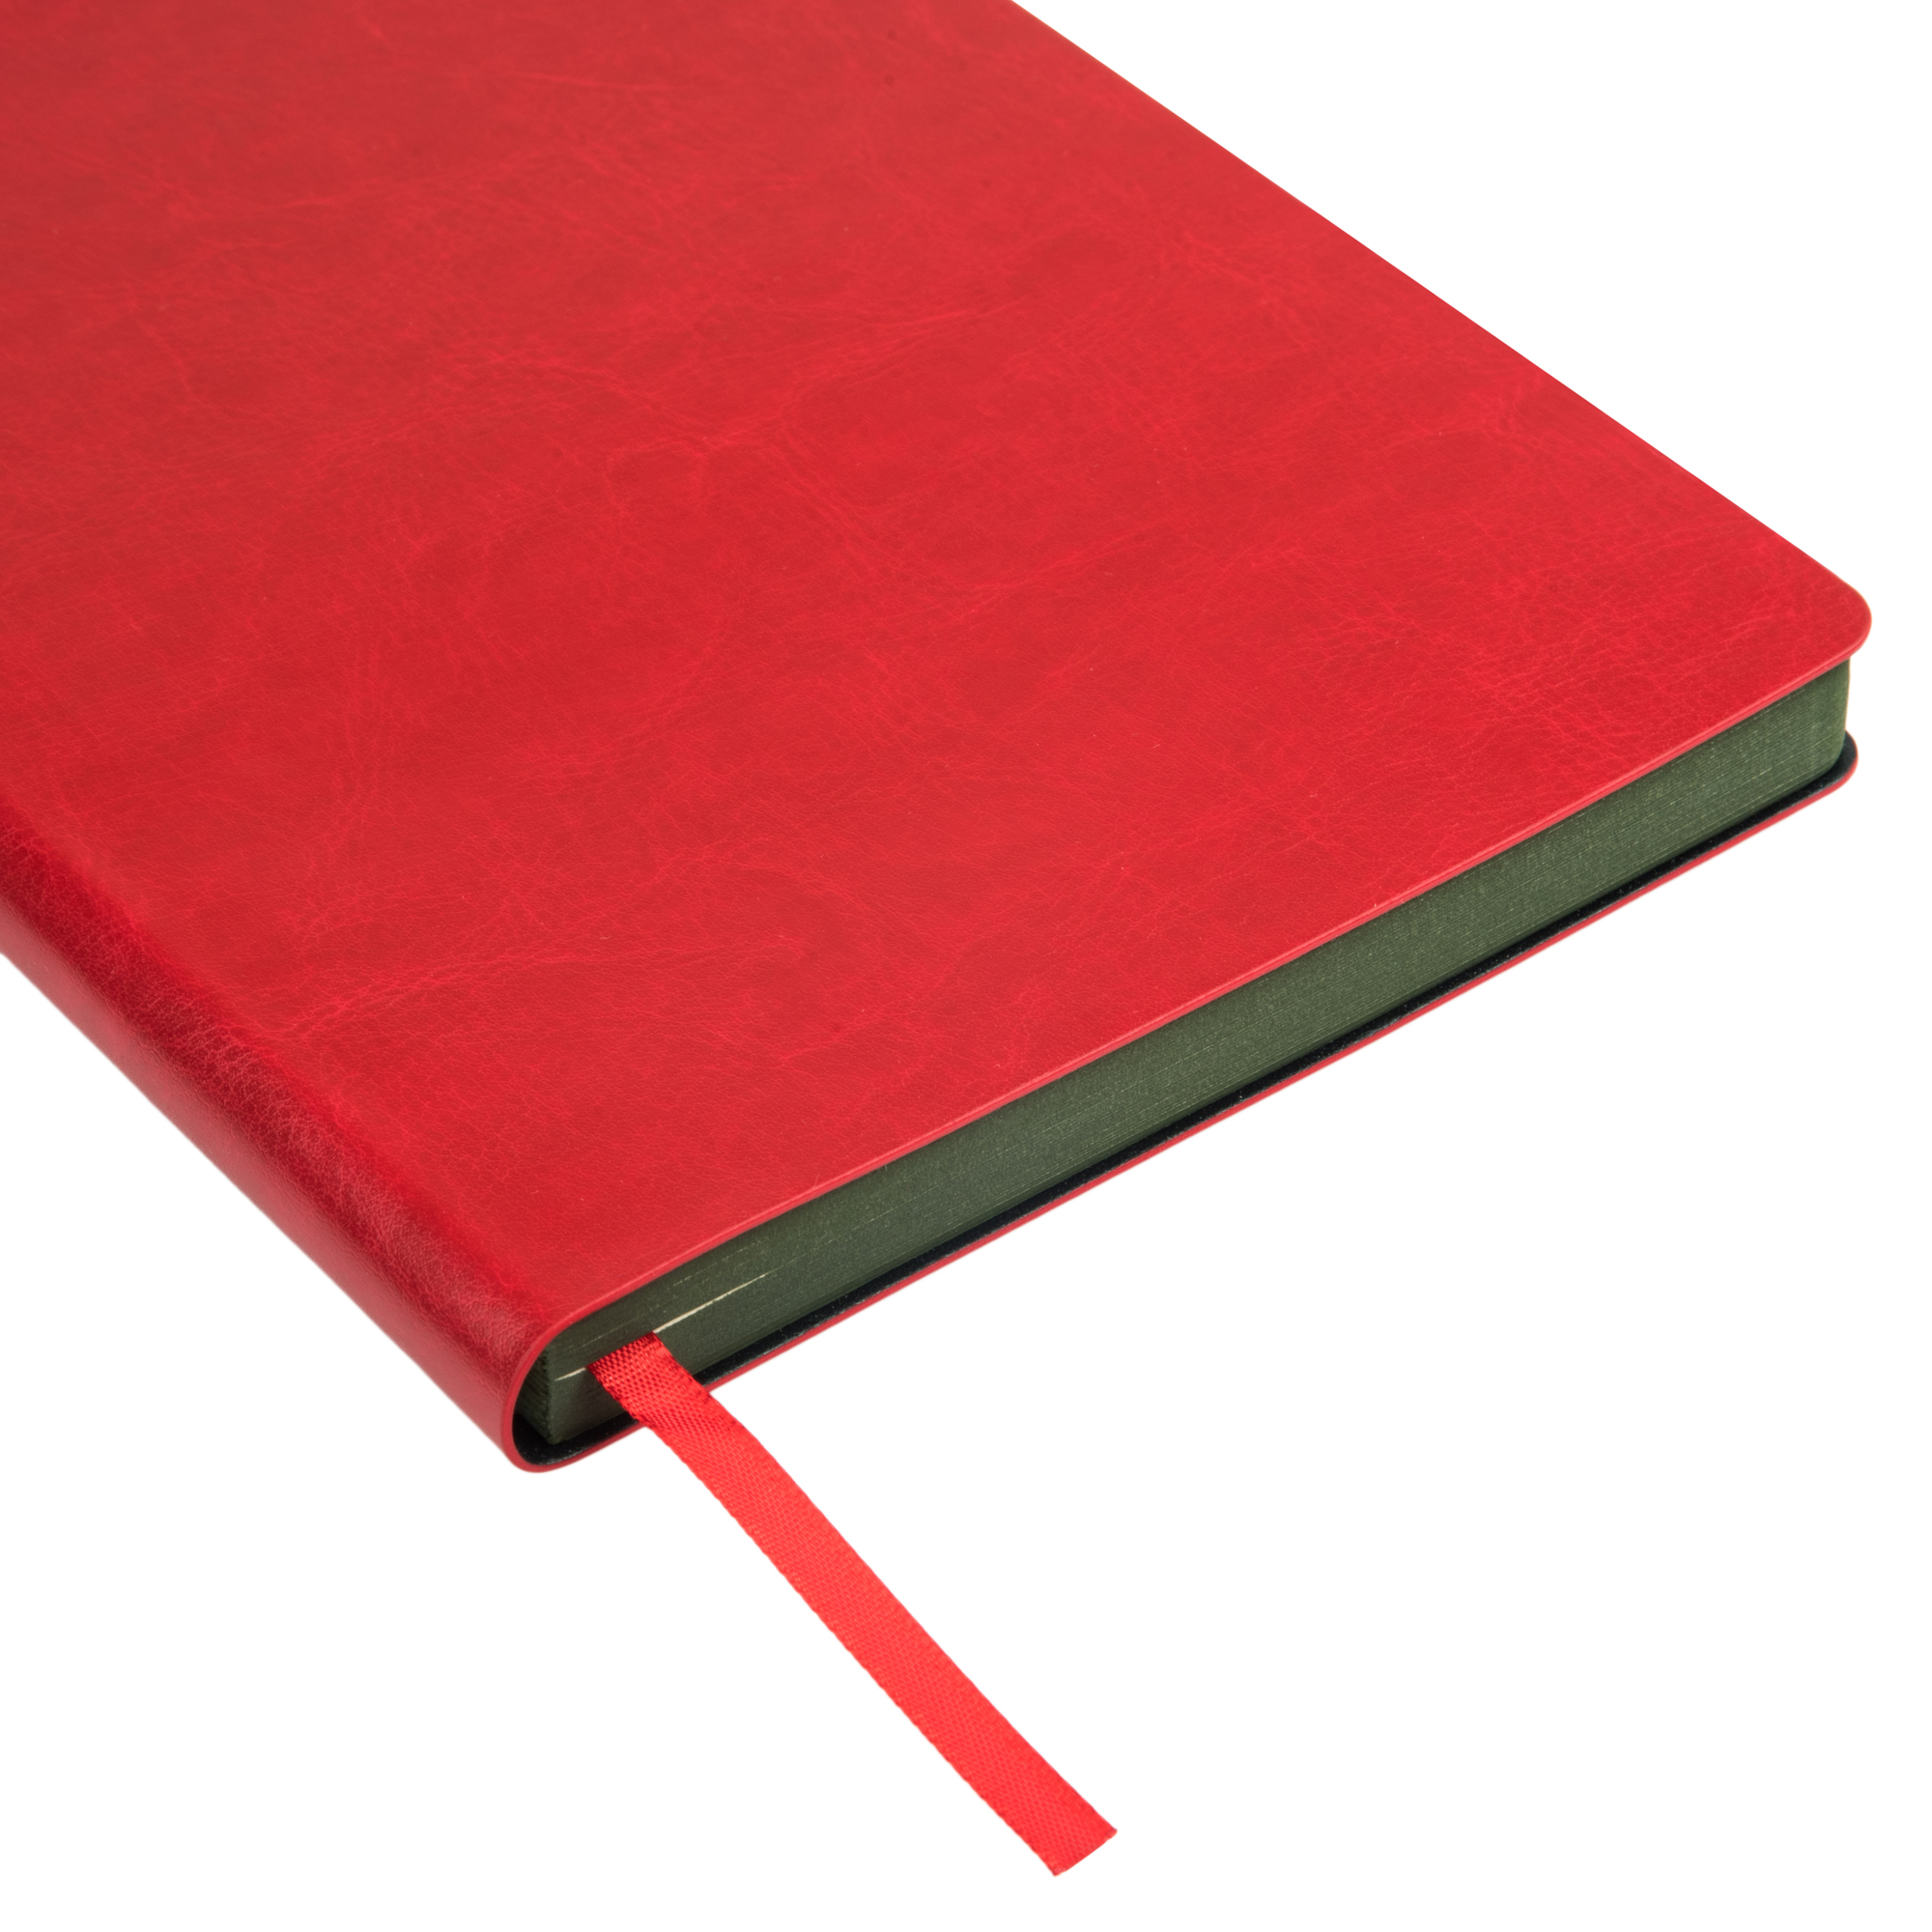 Ежедневник недатированный, Portobello Trend, River side, 145х210, 256 стр, красный/зеленый